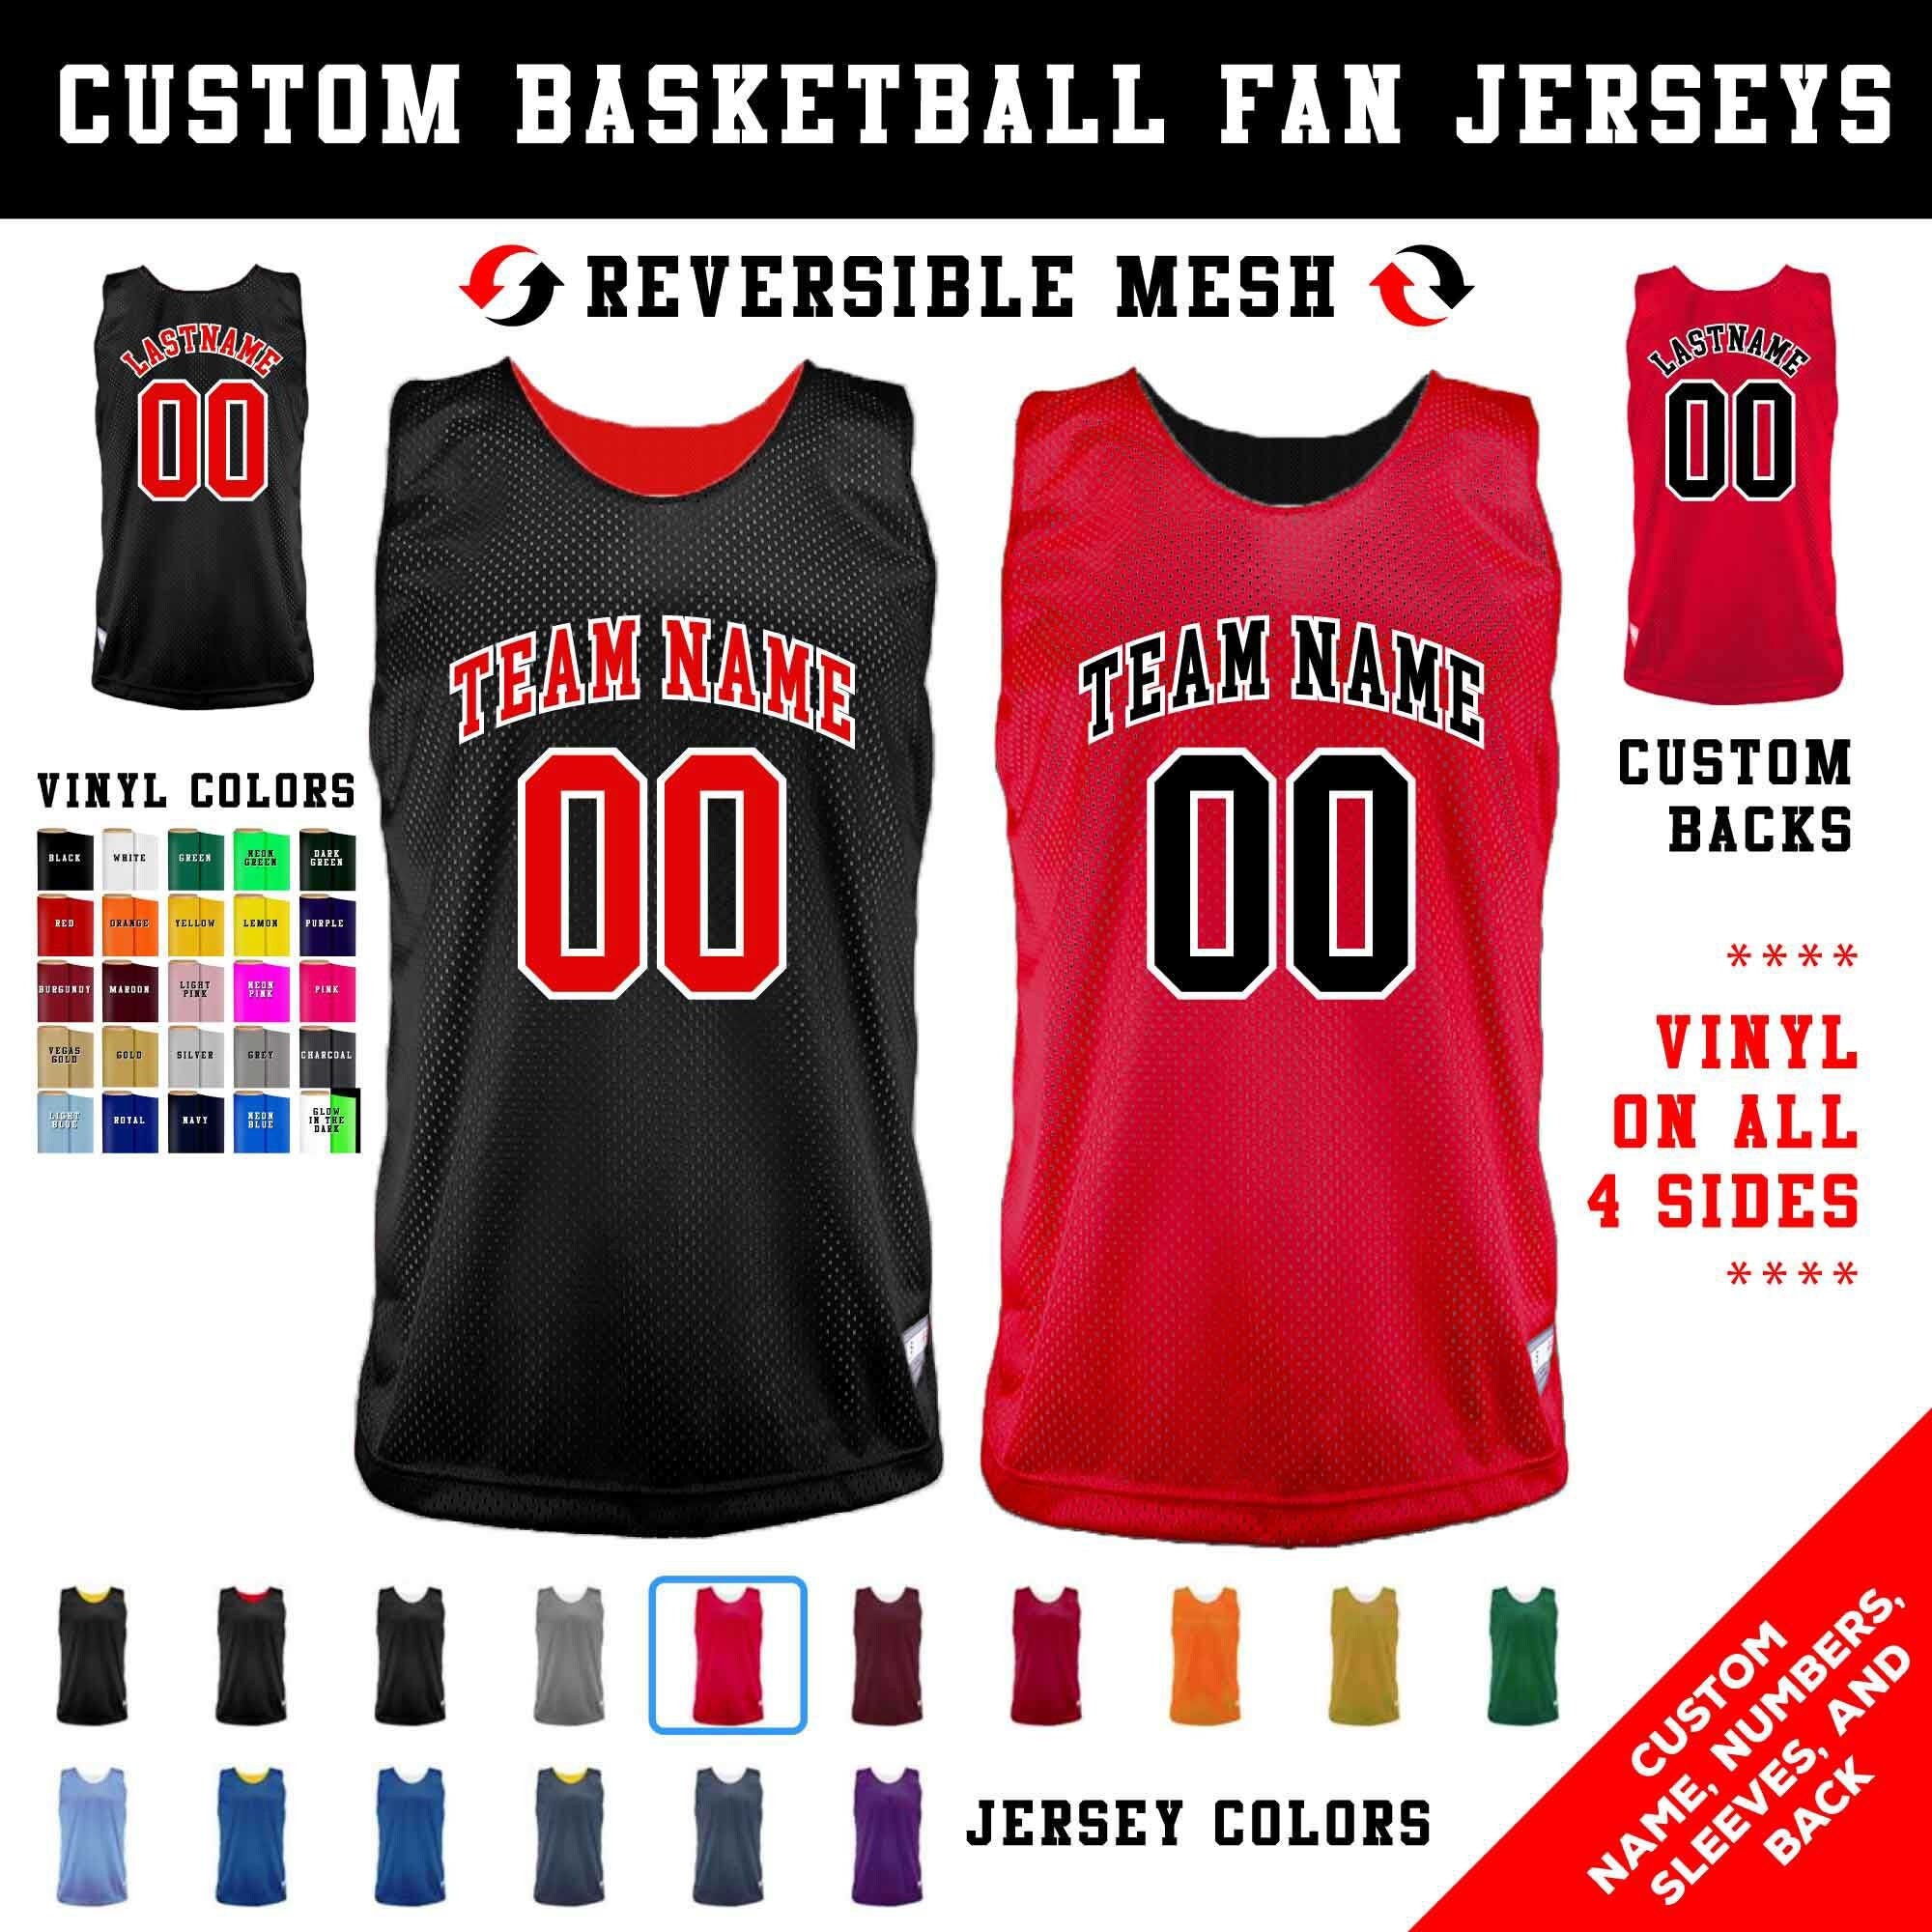 BASKETBALL JERSEY DESIGN  Best basketball jersey design, Jersey